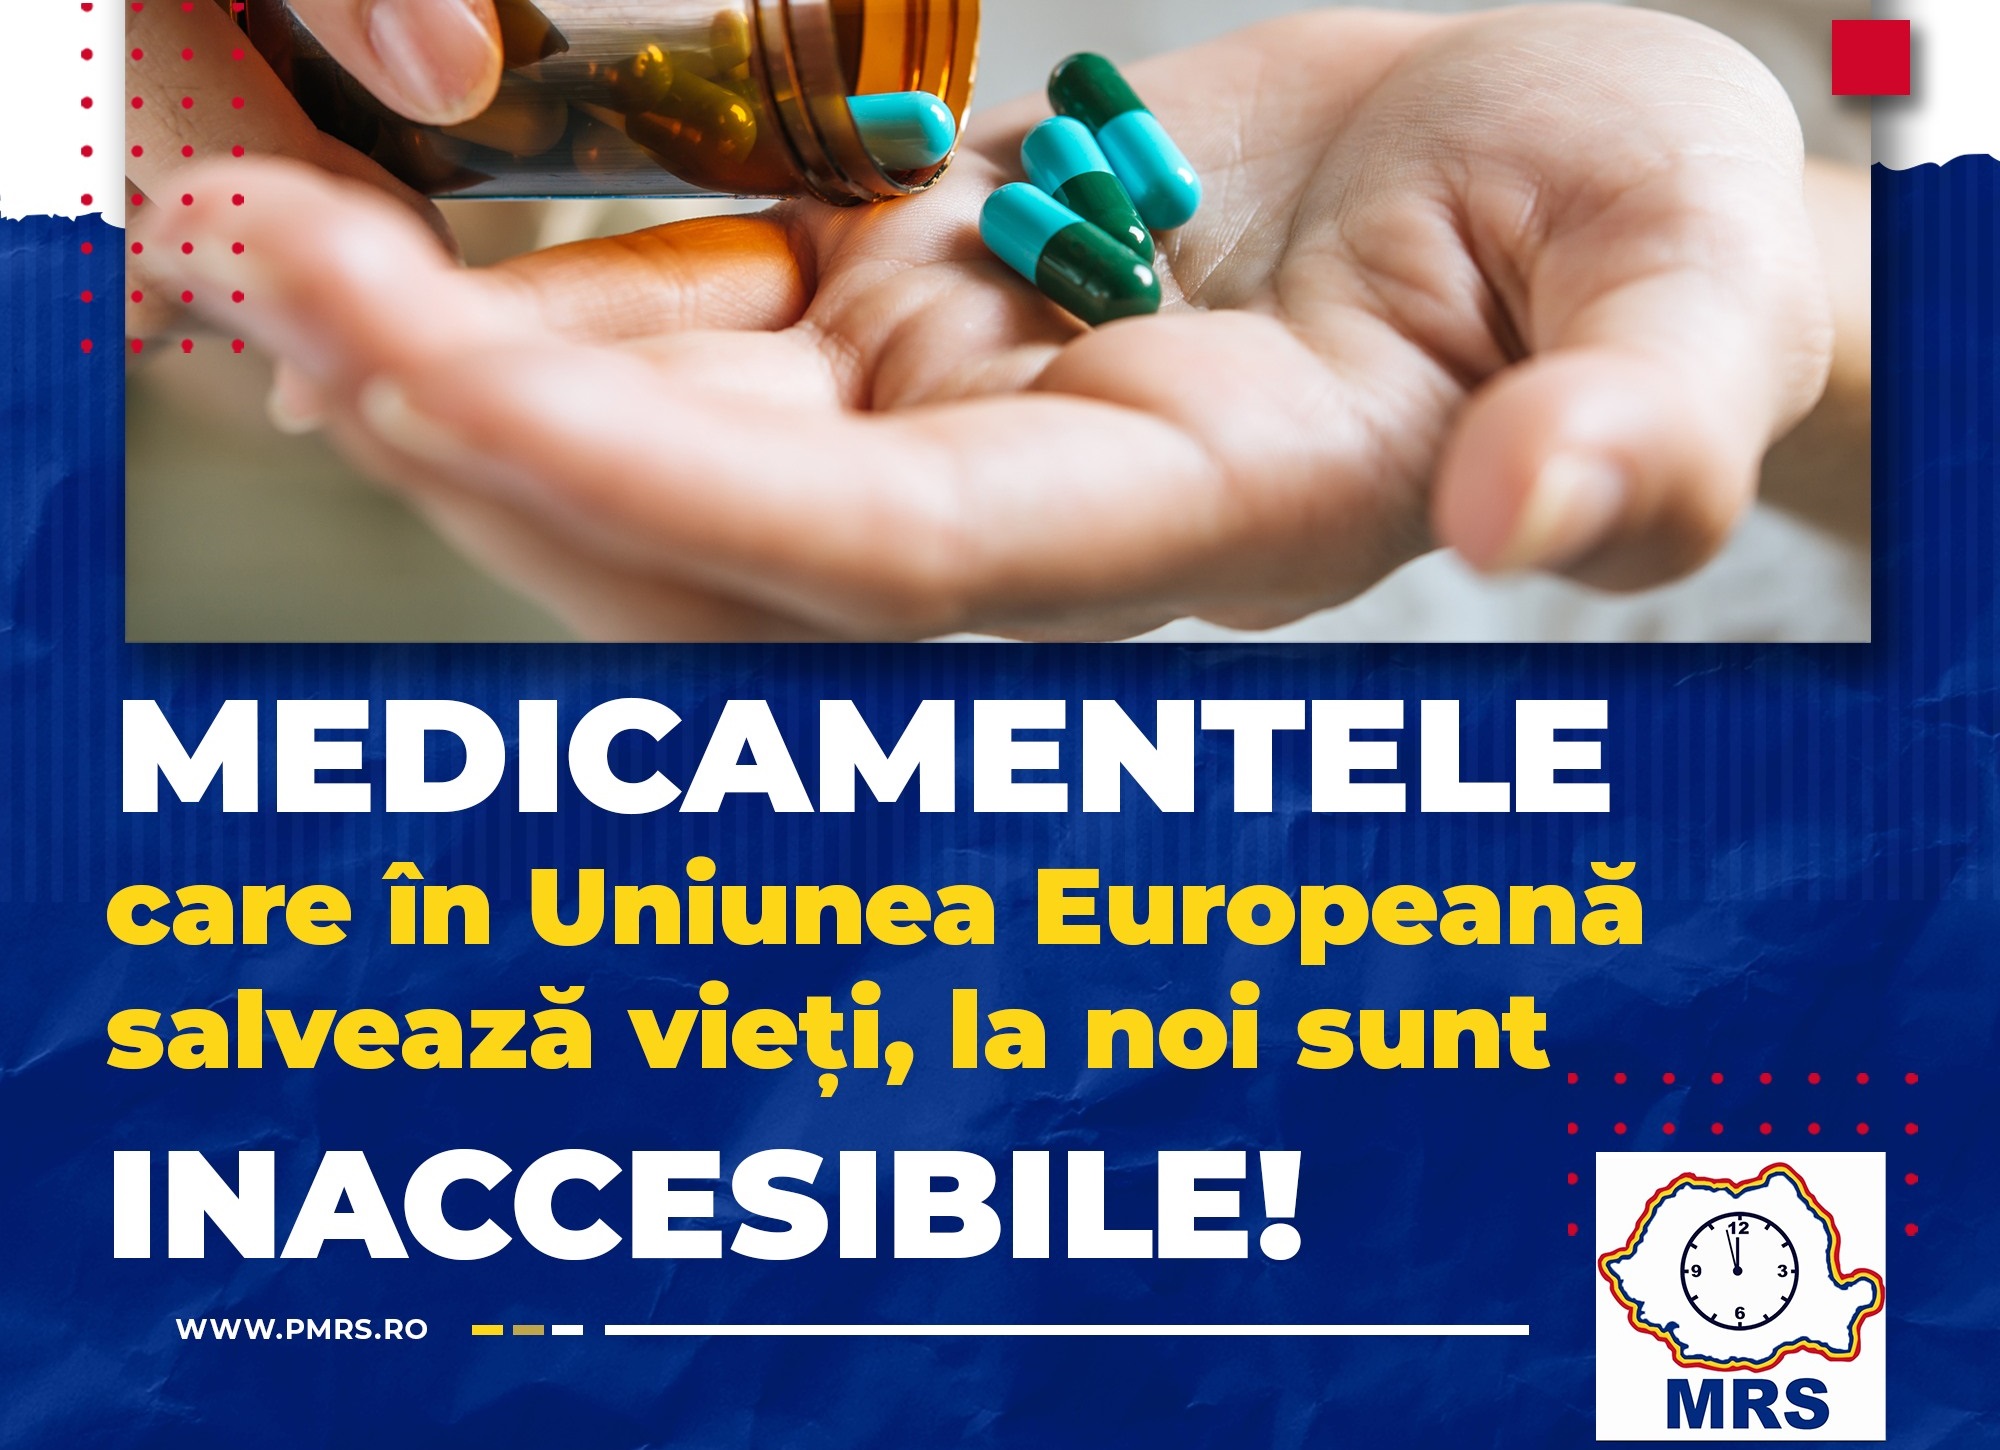 Partidul Mişcarea România Suverană ia atitudine cu privire la accesul limitat al românilor la medicamente vitale